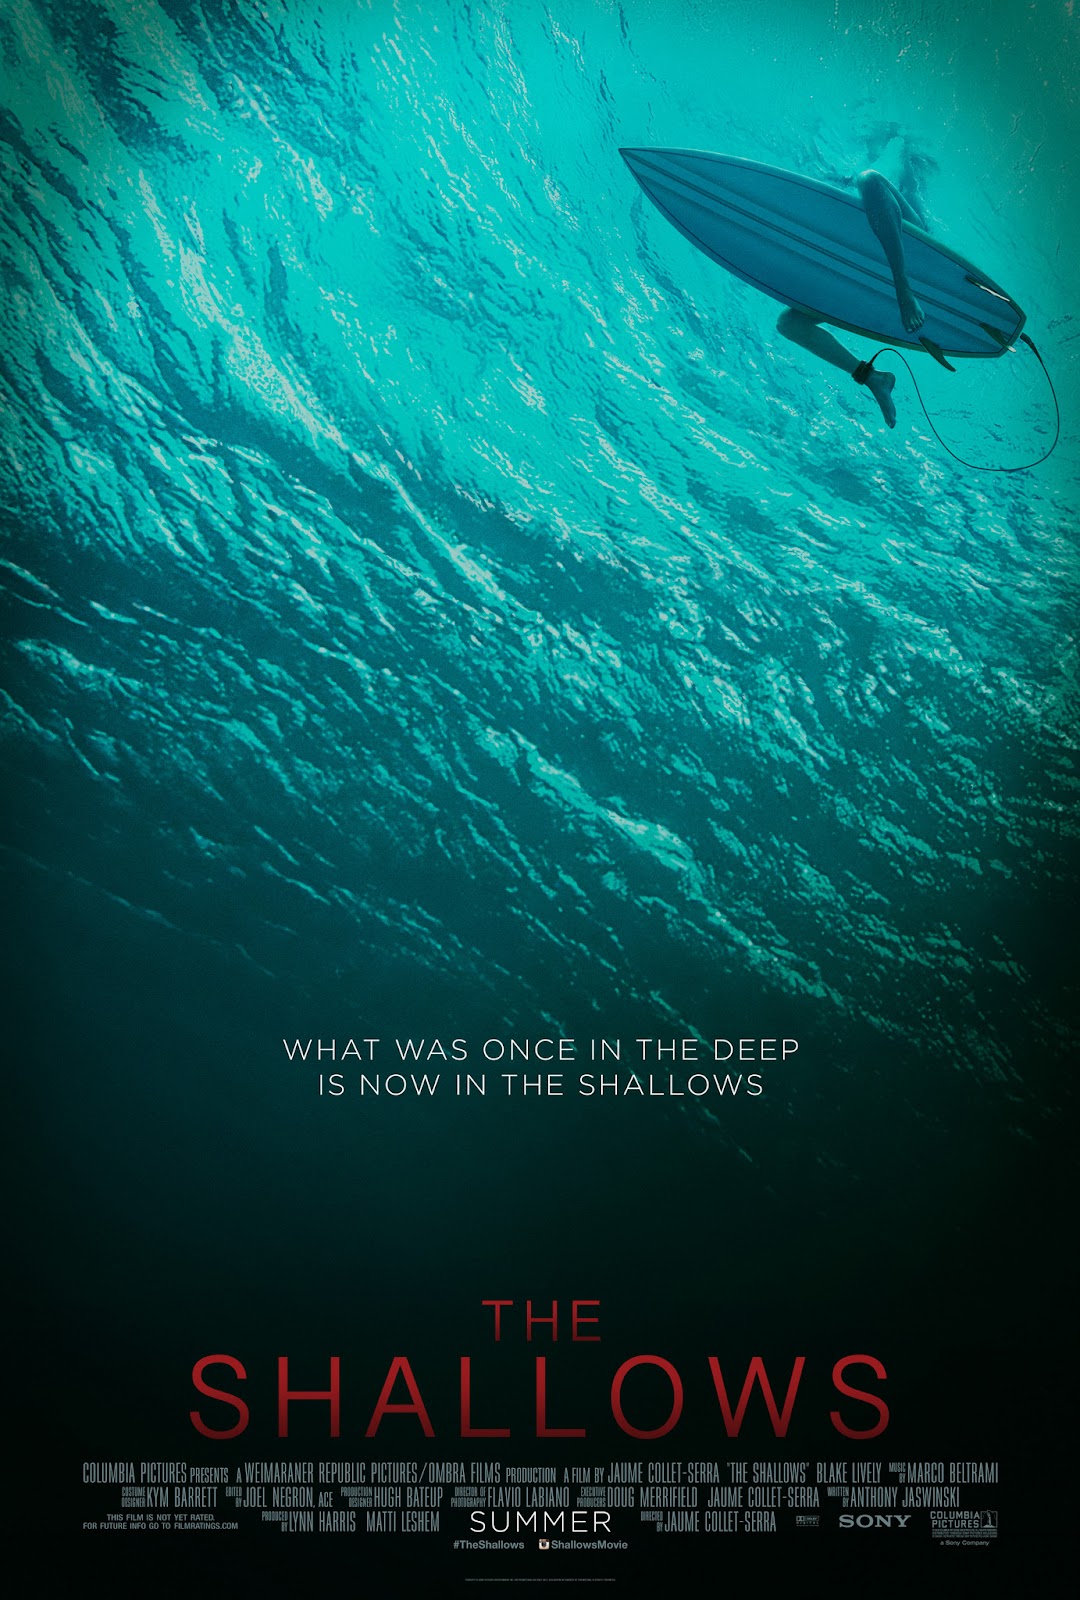 ｃｉａ こちら映画中央情報局です The Shallows ブレイク ライヴリー主演のサメ映画 ザ シャロウズ が サメと闘うハメになるヒロインが 自分の命よりも大事かもしれない事情のために生還を目指すらしい物語をより紹介した新しい予告編をリリース